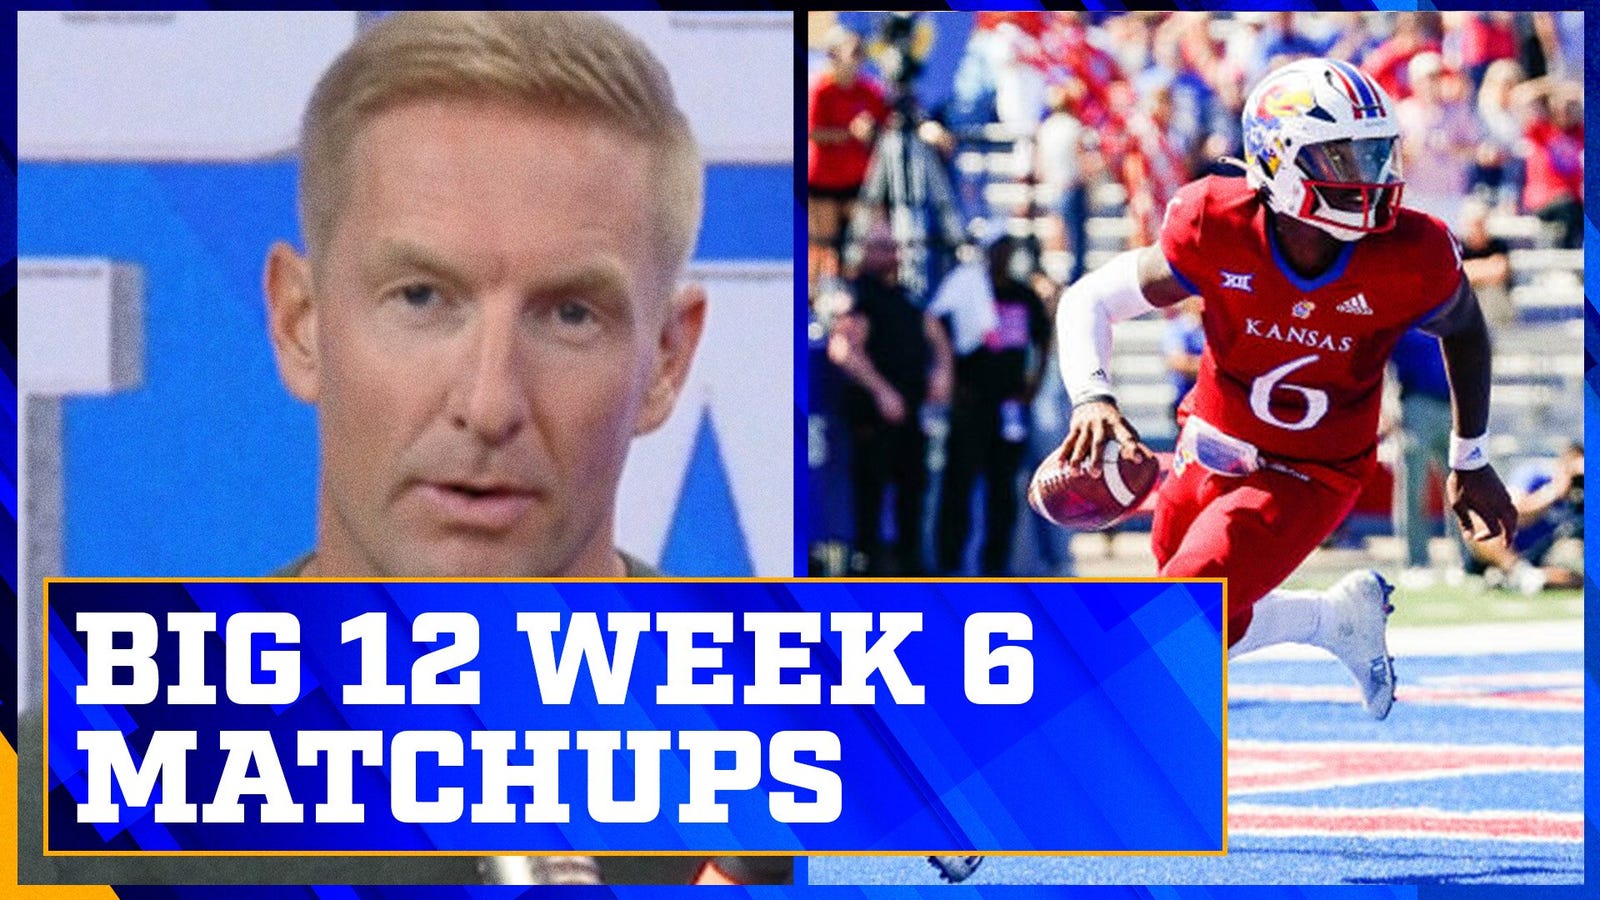 Big 12 Week 6 Preview: TCU vs. Kansas